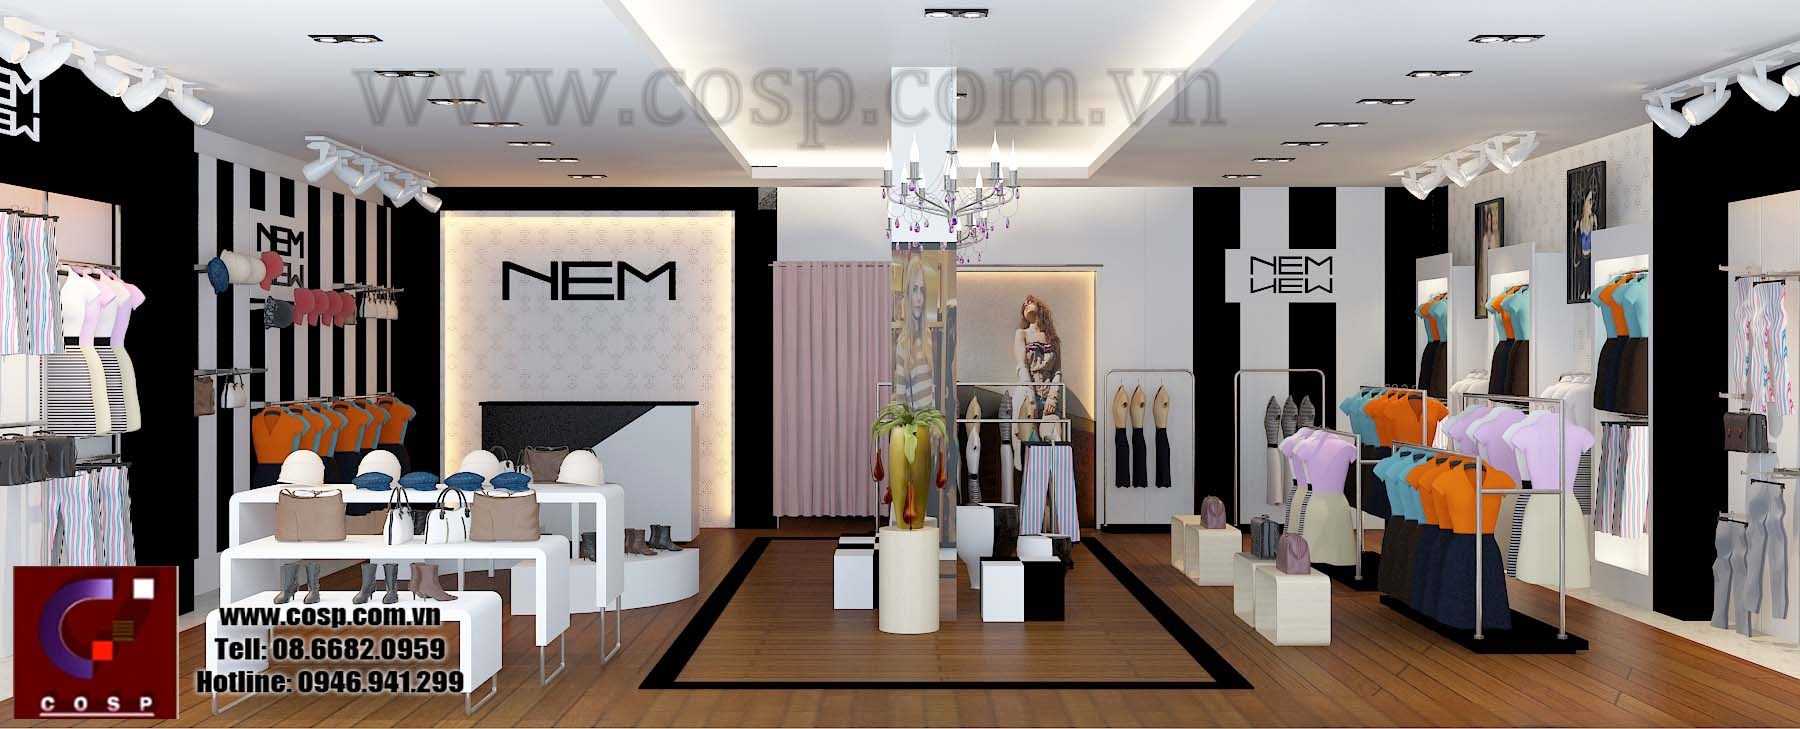 thiết kế cửa hàng thời trang cao cấp newnem 3